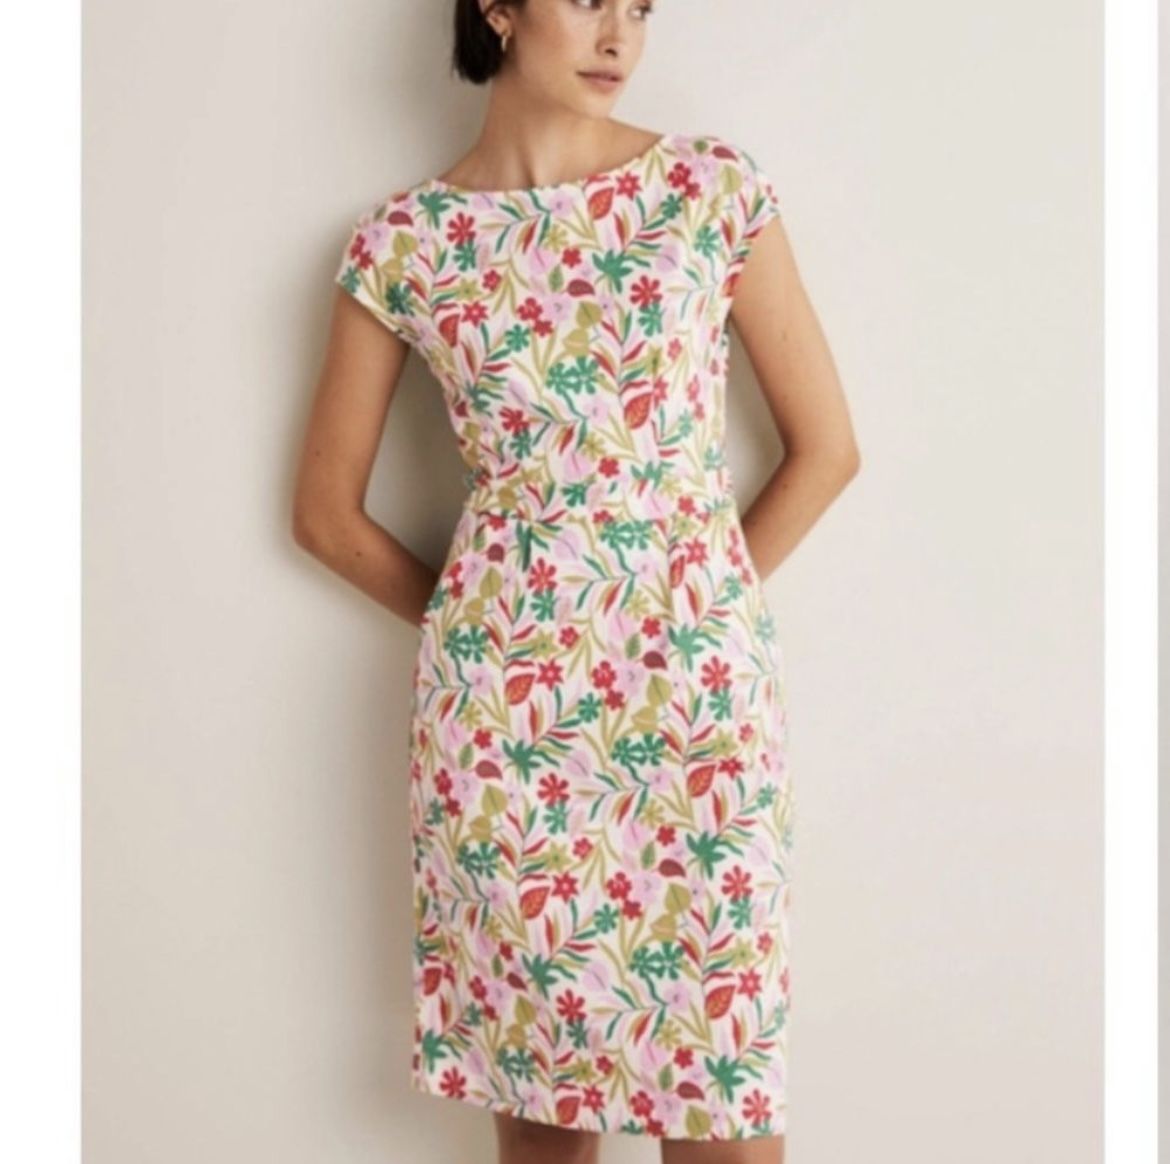 Boden Florrie Floral Cotton Jersey Dress - Size 2P